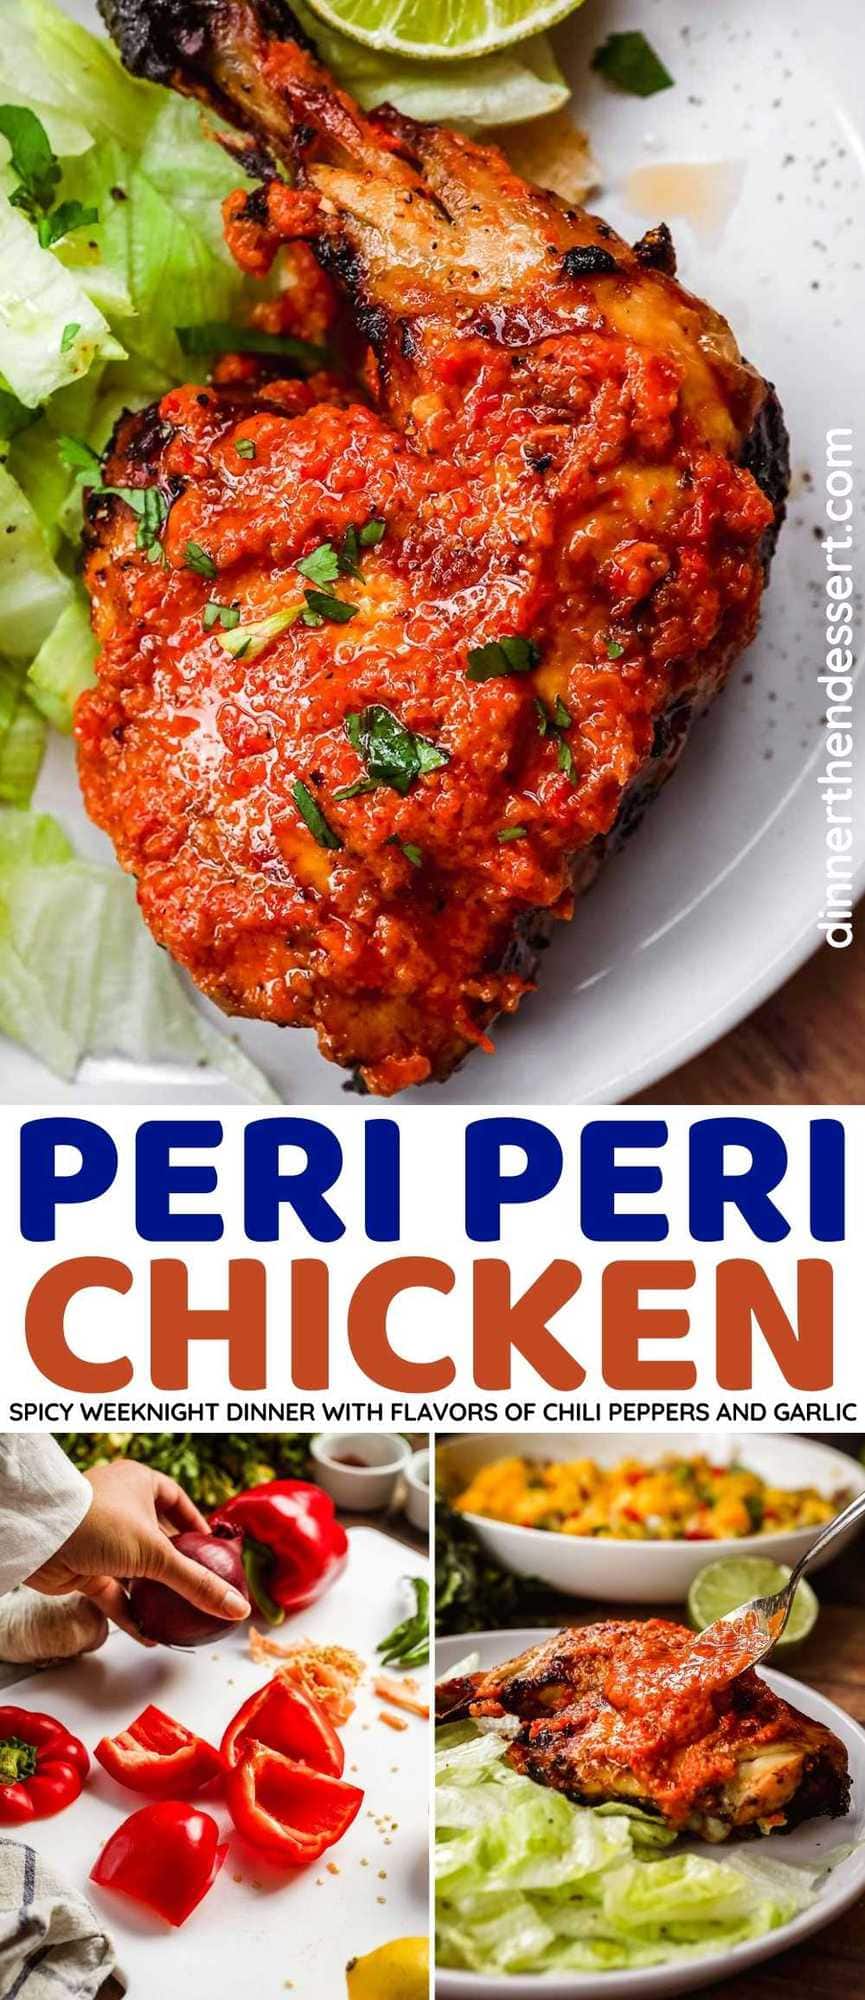 Peri Peri Chicken collage